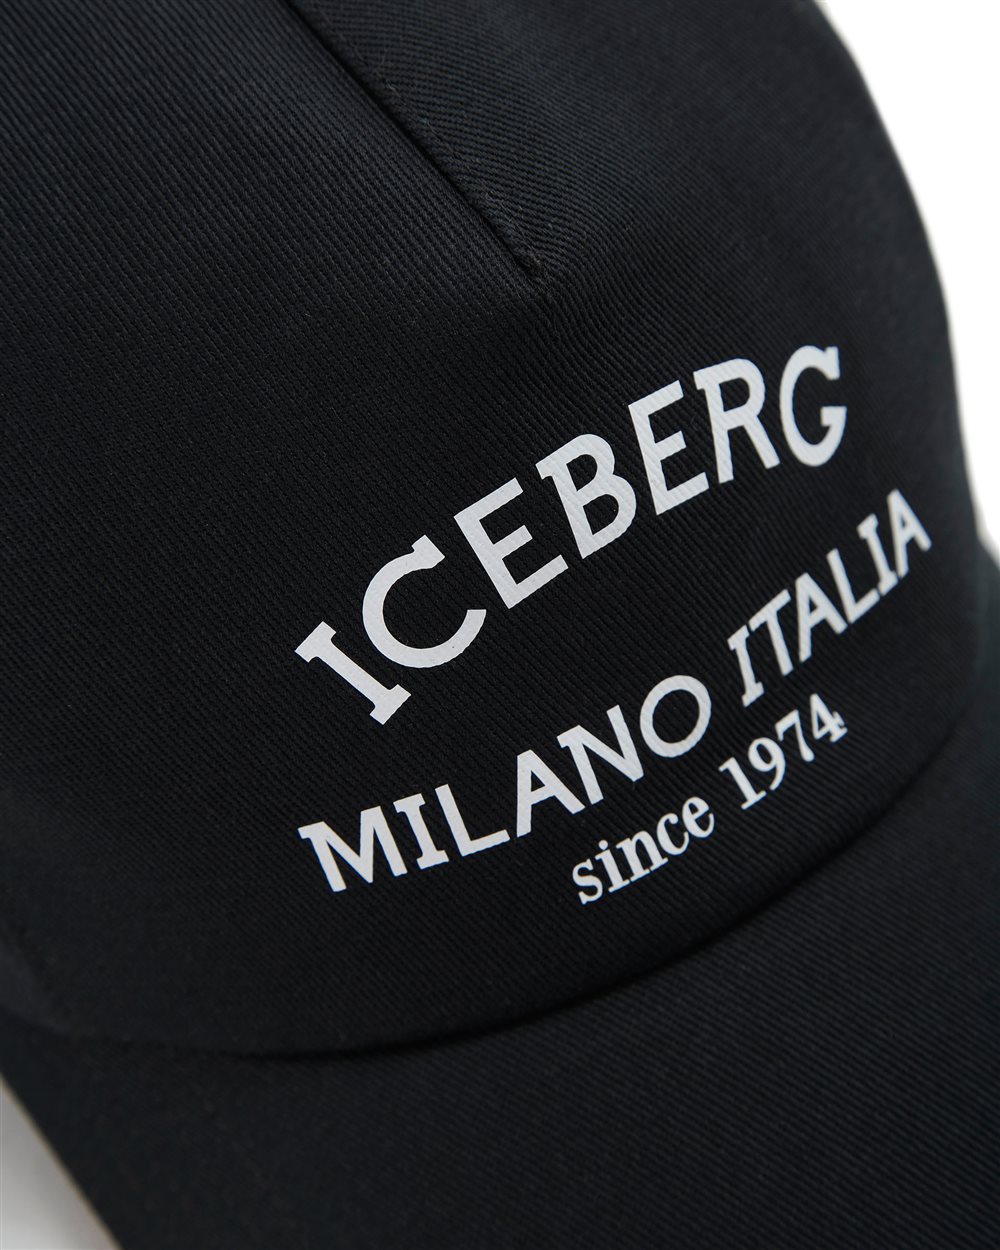 Cappello baseball con logo - Iceberg - Official Website